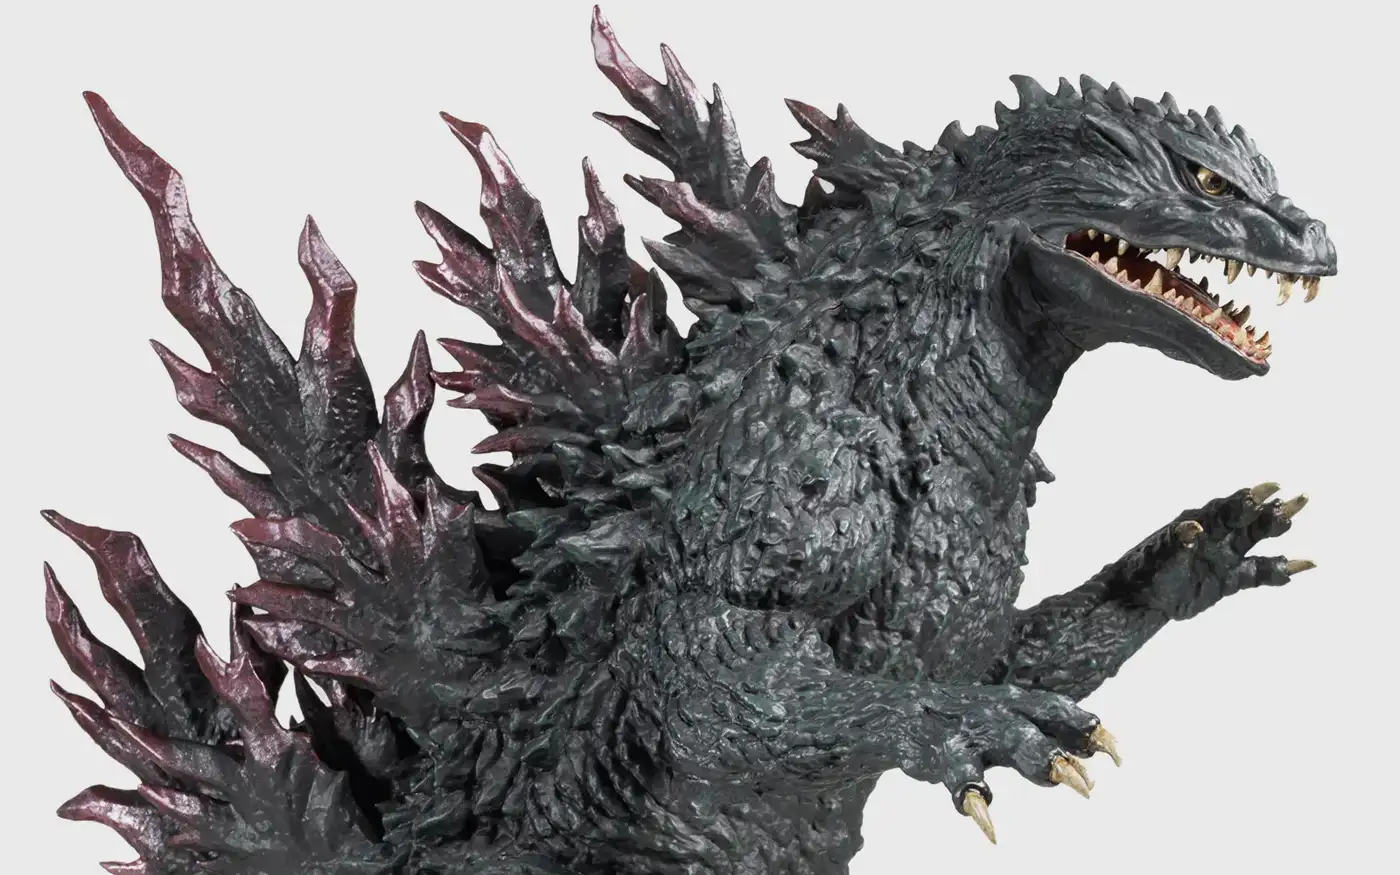 Godzilla followed me home – MyKaiju®